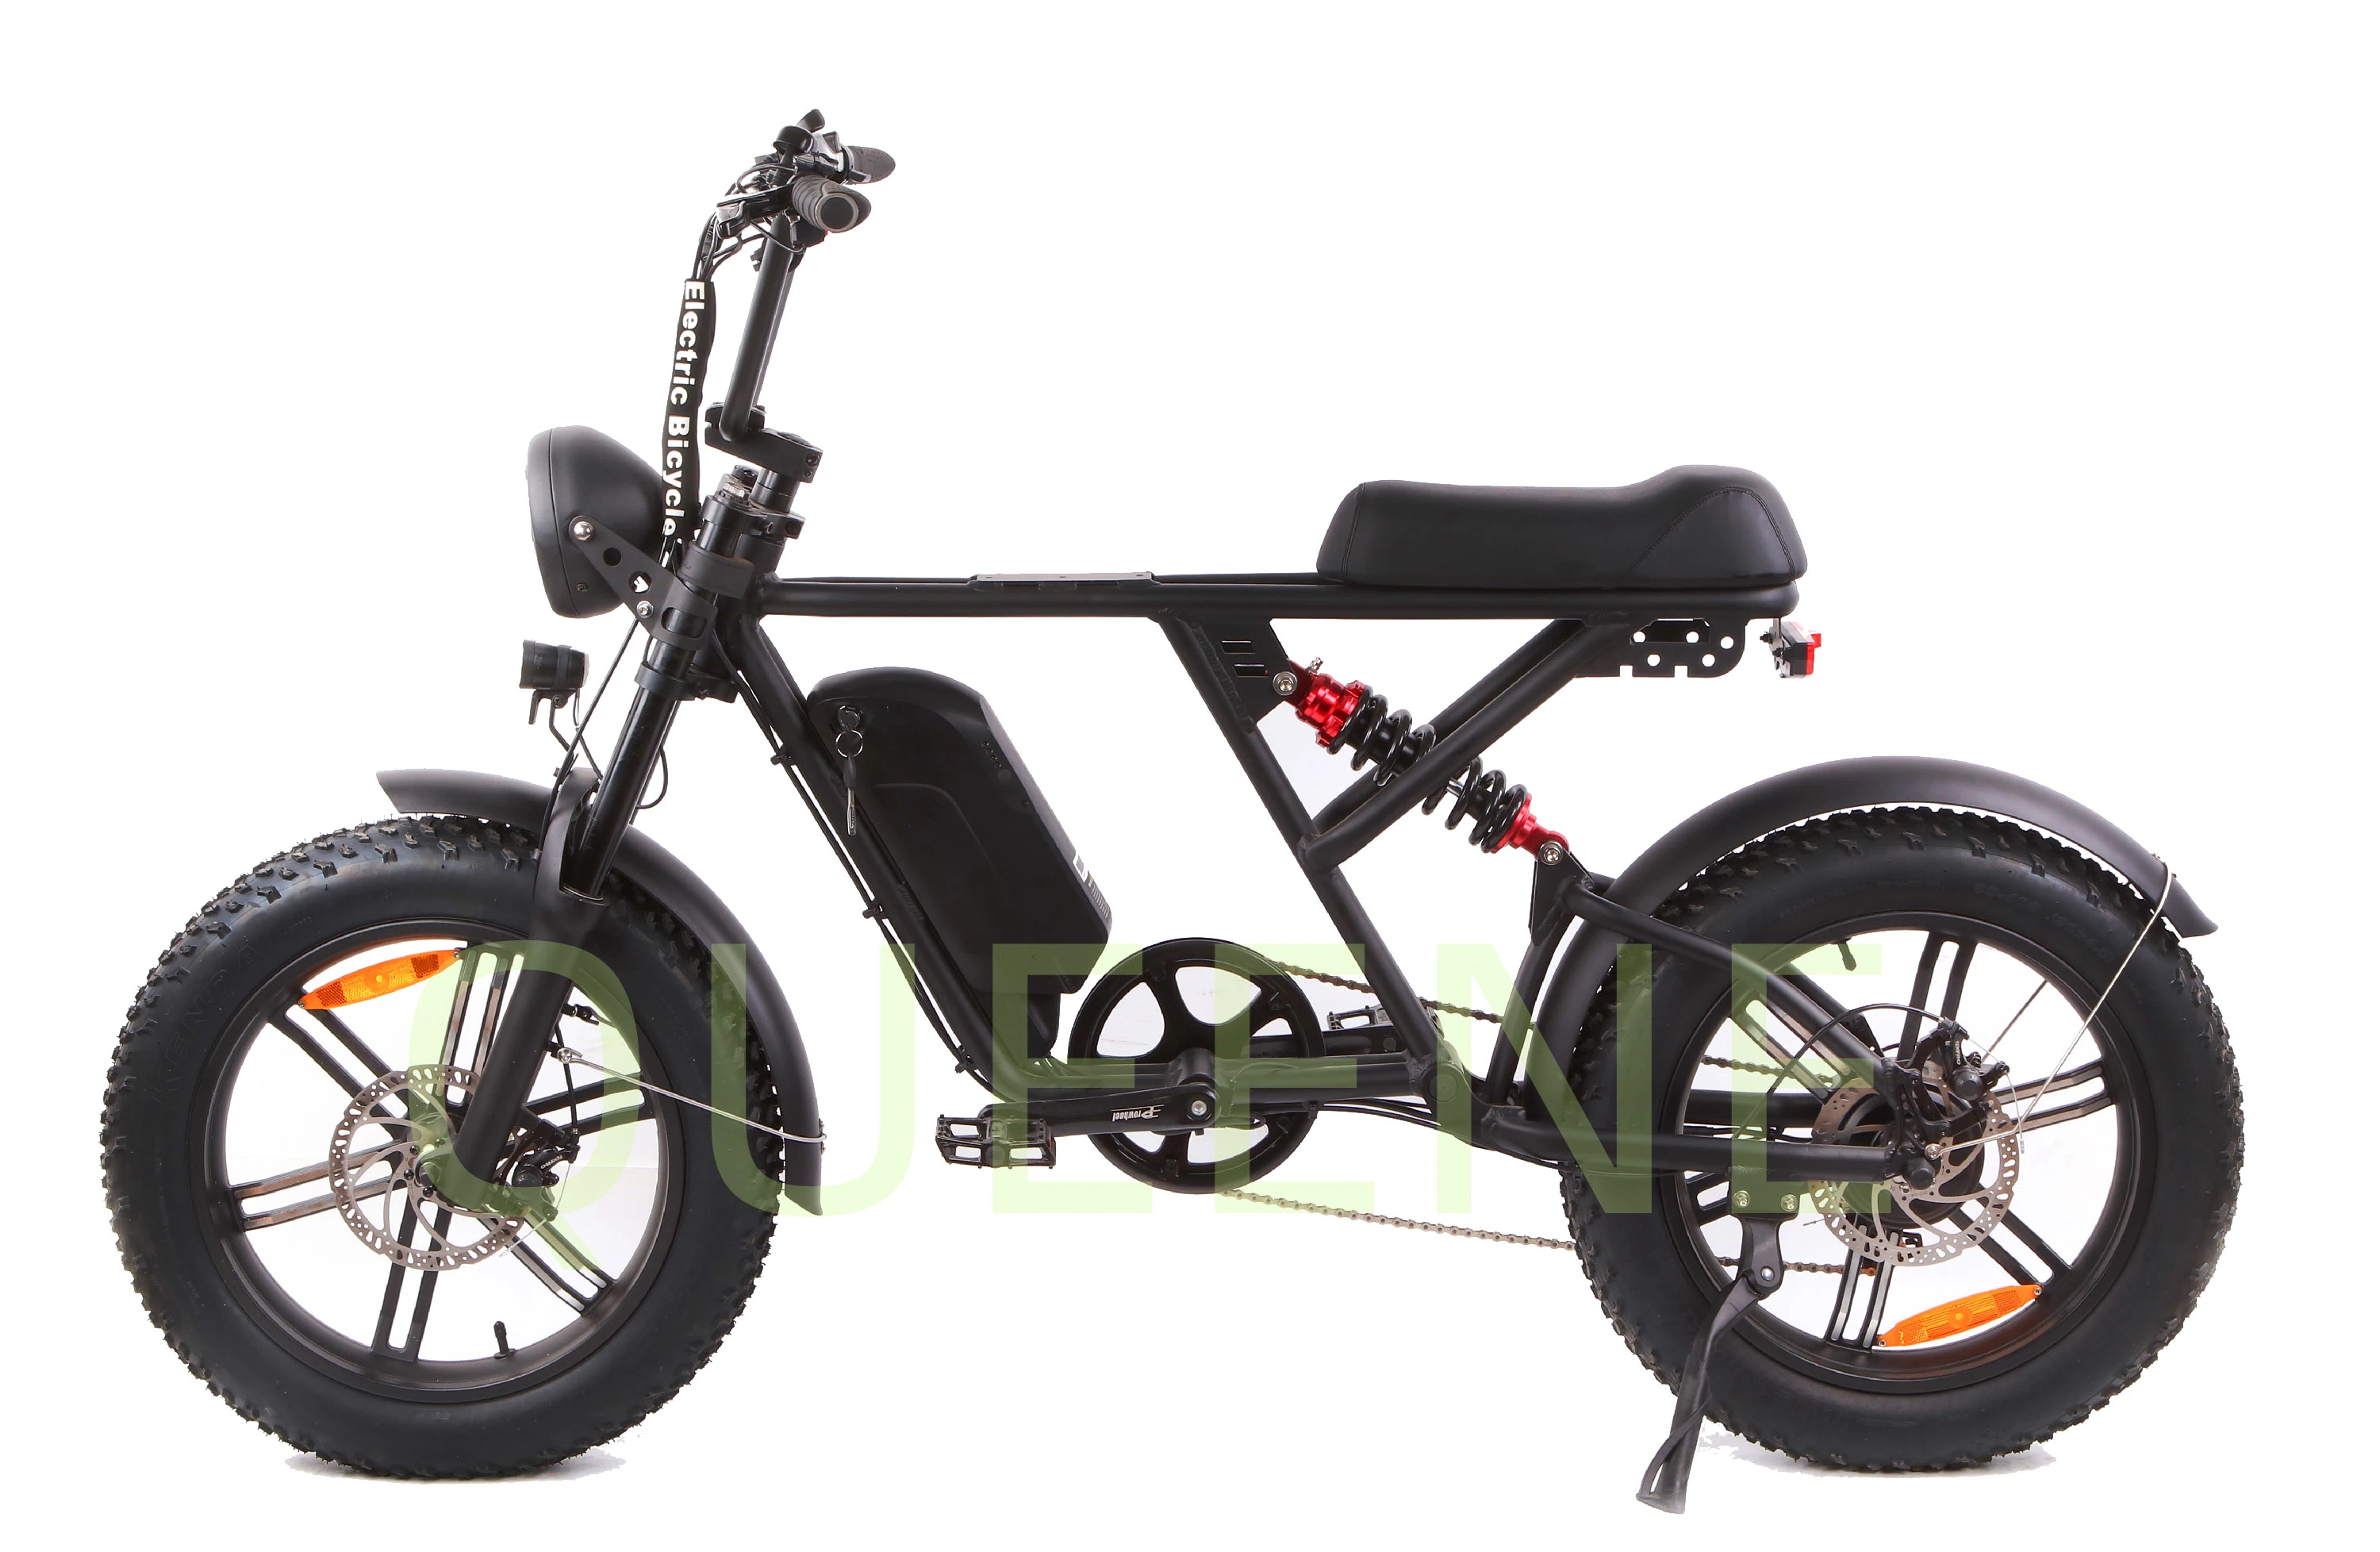 48 V 500 W 750 W 1000 W Power China - suspensão total com baixo nível de detalhe retro Vintage eBike DiRT Mountain Fat Tire Bicicleta bicicleta elétrica